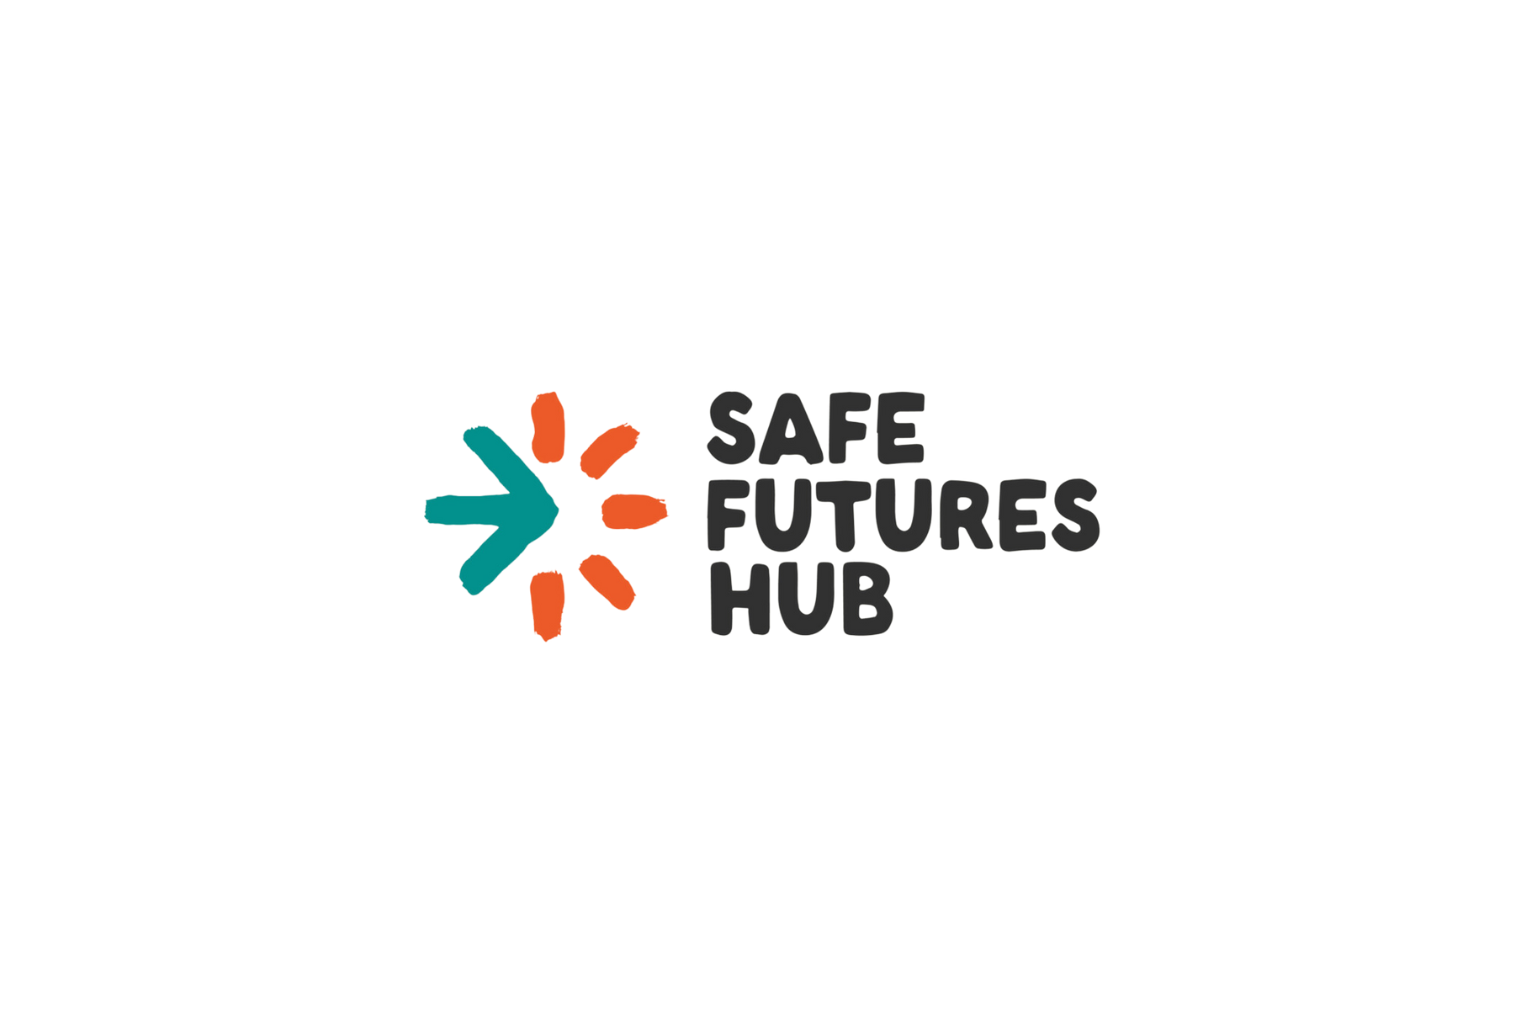 Safe futures hub